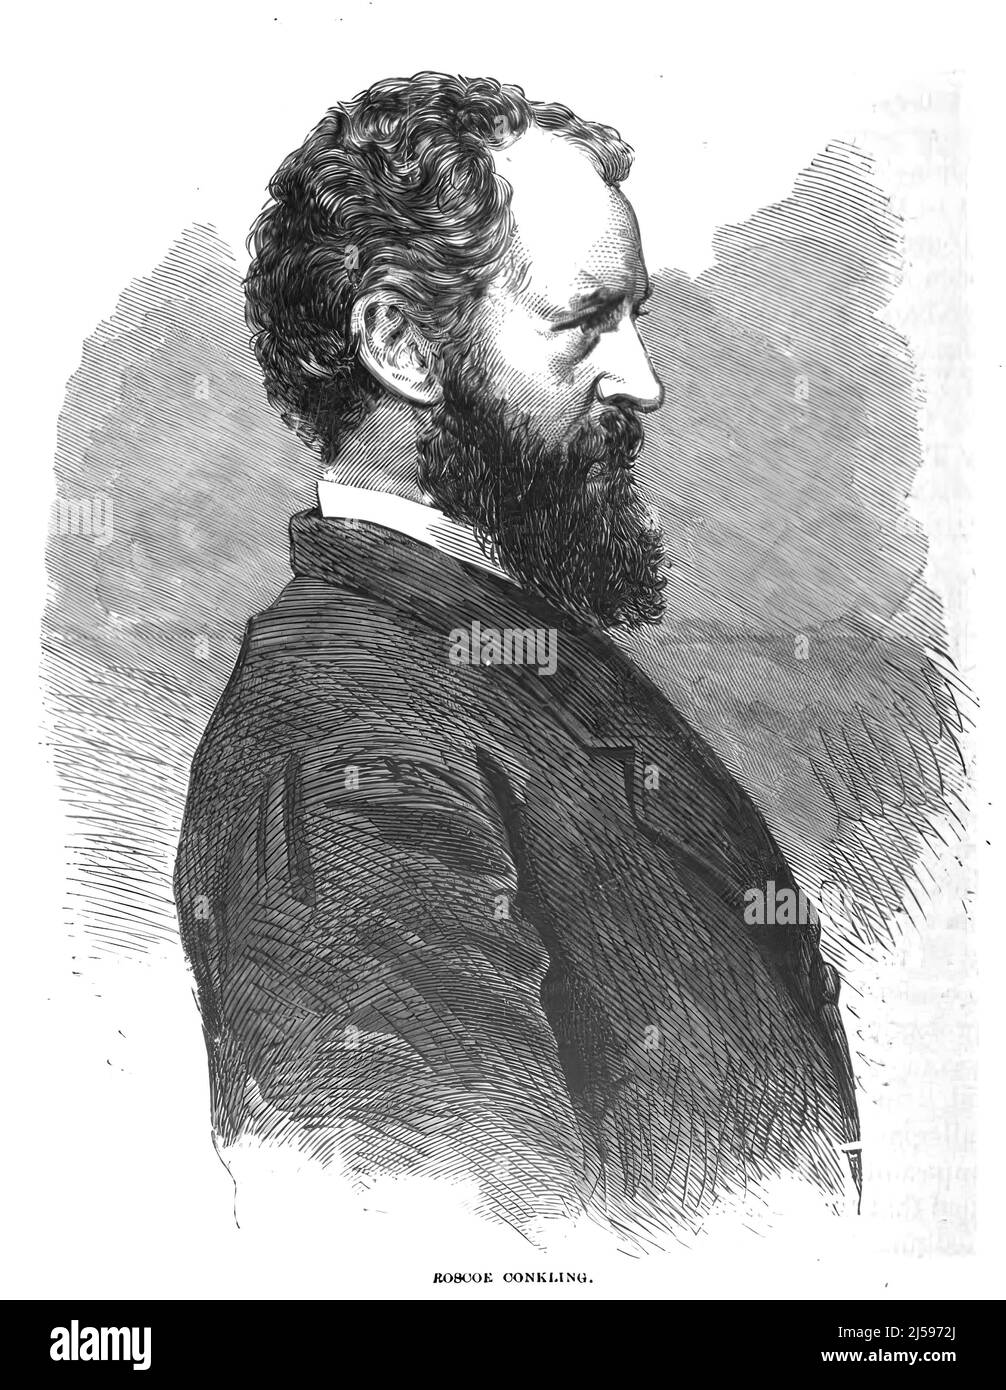 Portrait de Roscoe Conkling, membre du Congrès et sénateur de New York. illustration du siècle 19th Banque D'Images